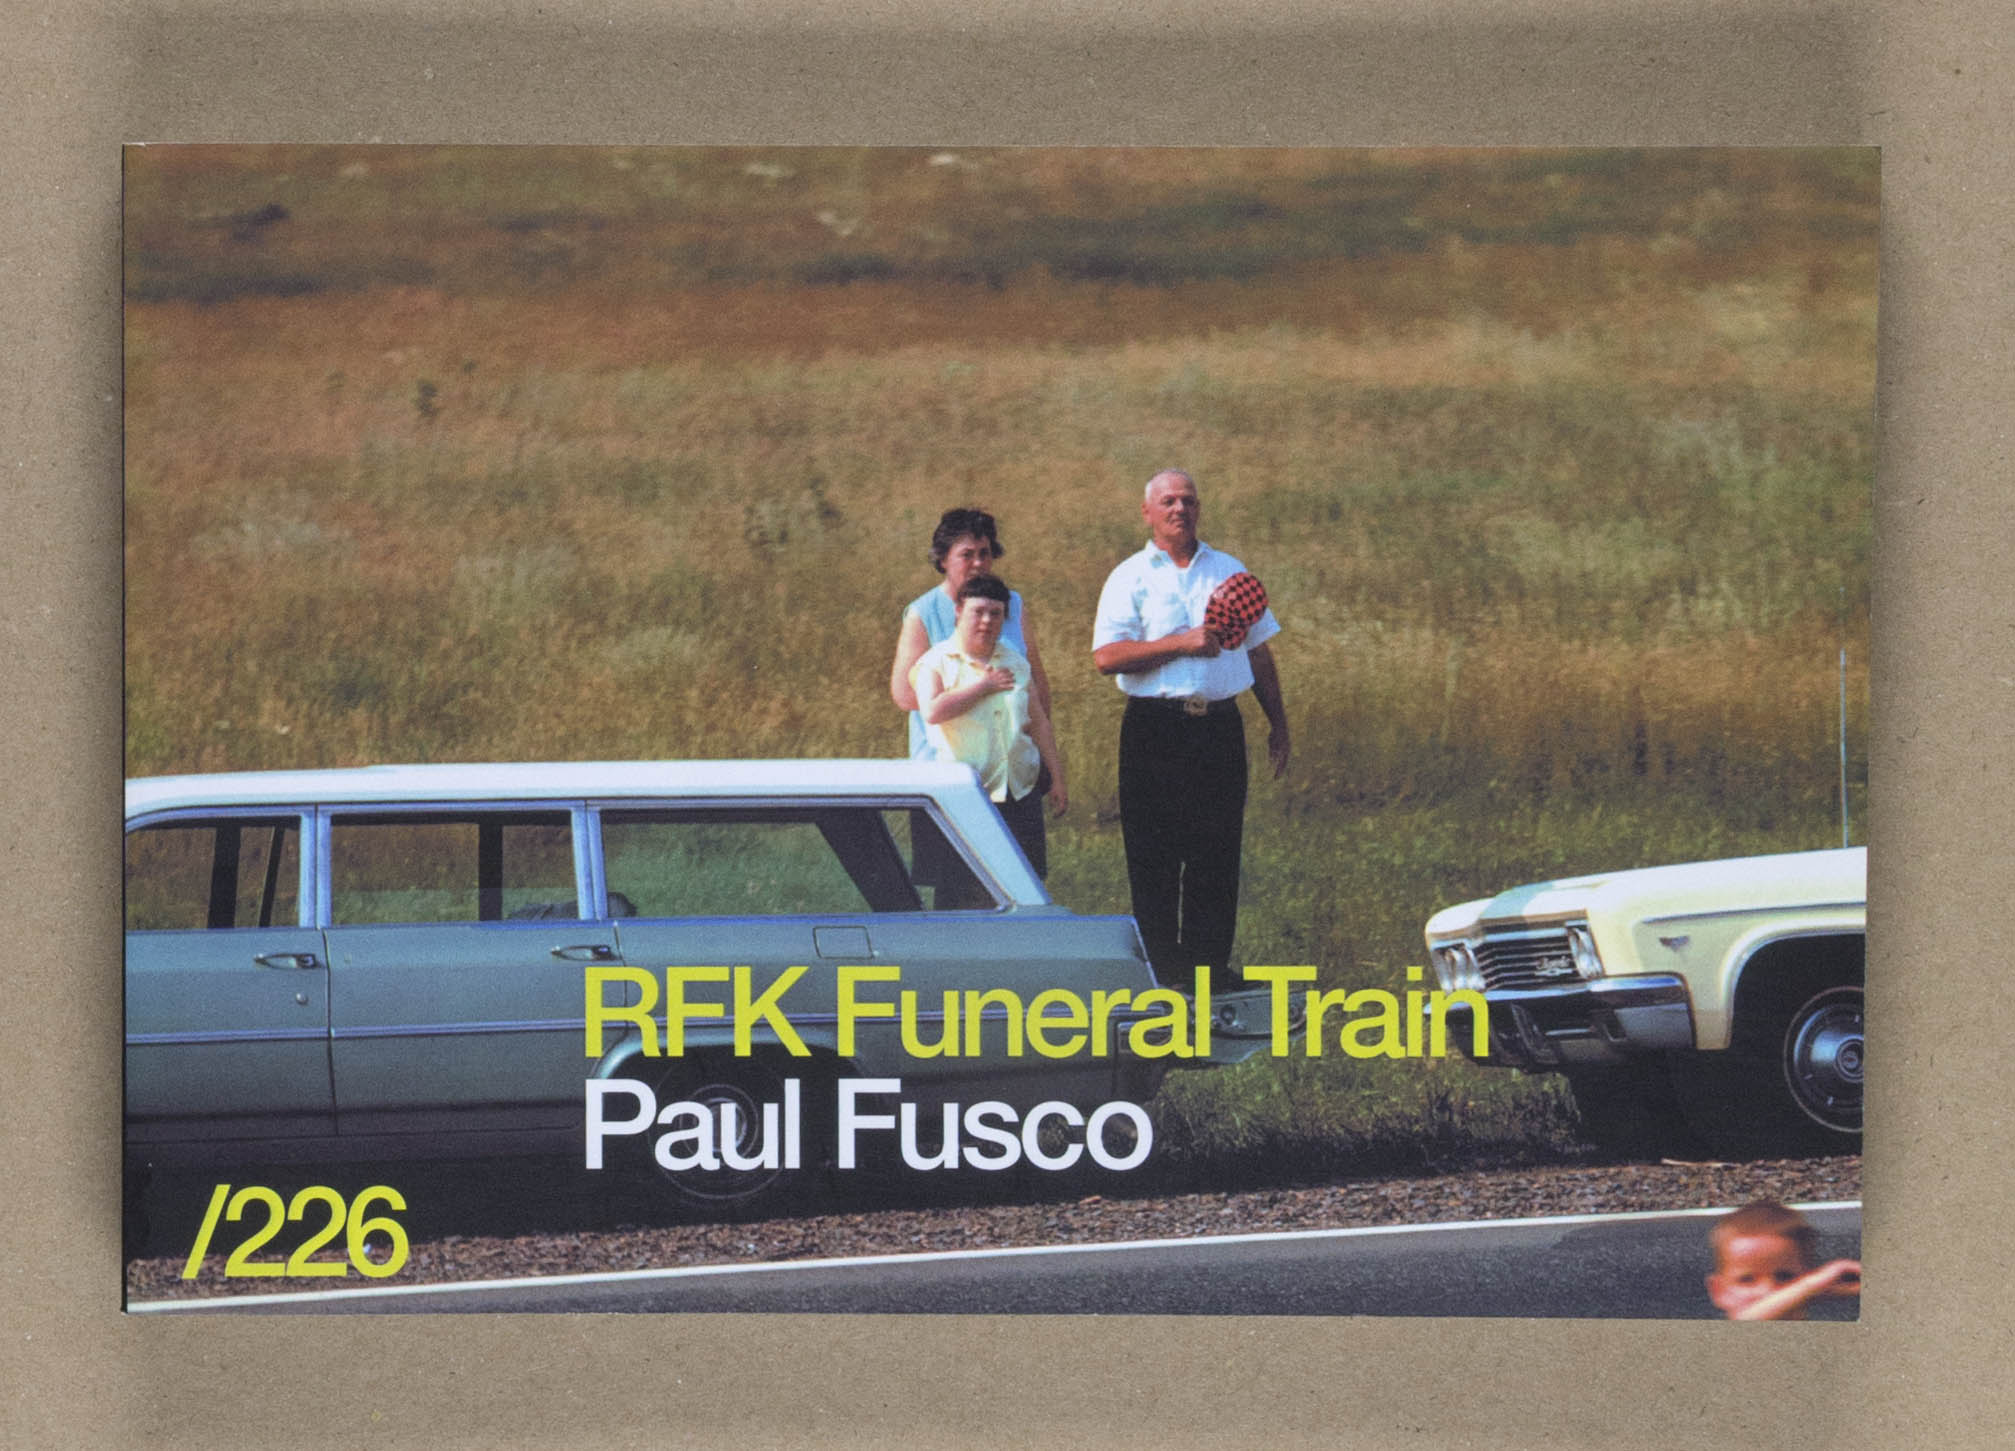 RFK Funeral Train